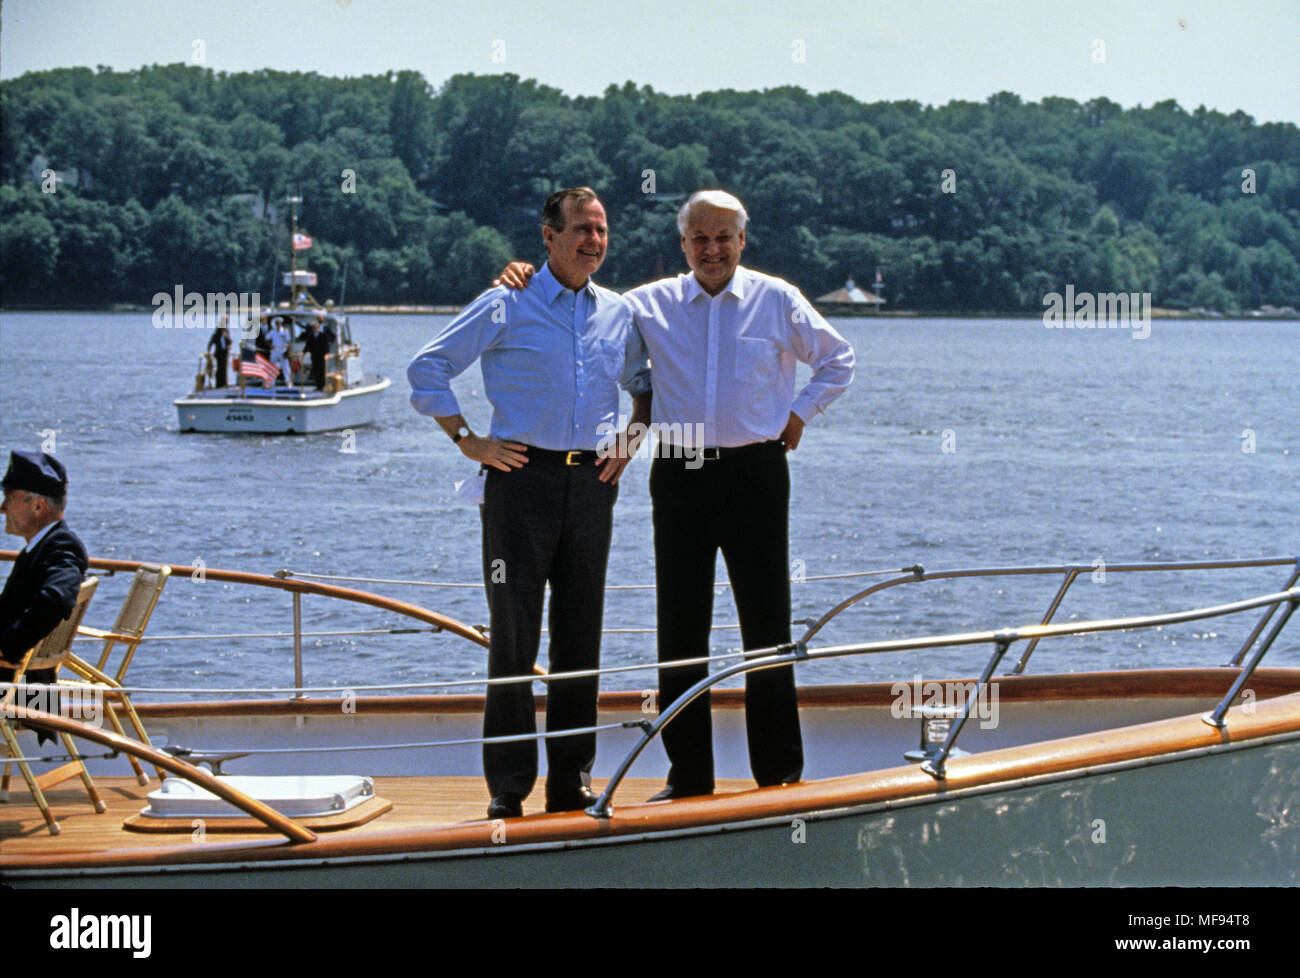 La rivière Severn, Maryland, USA. 17 Juin, 1992. Le président des États-Unis George H. W. BUSH, à gauche, et le président Boris Eltsine, de la Fédération de Russie, à droite, sur le pont comme ils prennent un tour en bateau sur la rivière Severn dans le Maryland le 17 juin 1992. Crédit : Dennis Brack/CNP/ZUMA/Alamy Fil Live News Banque D'Images